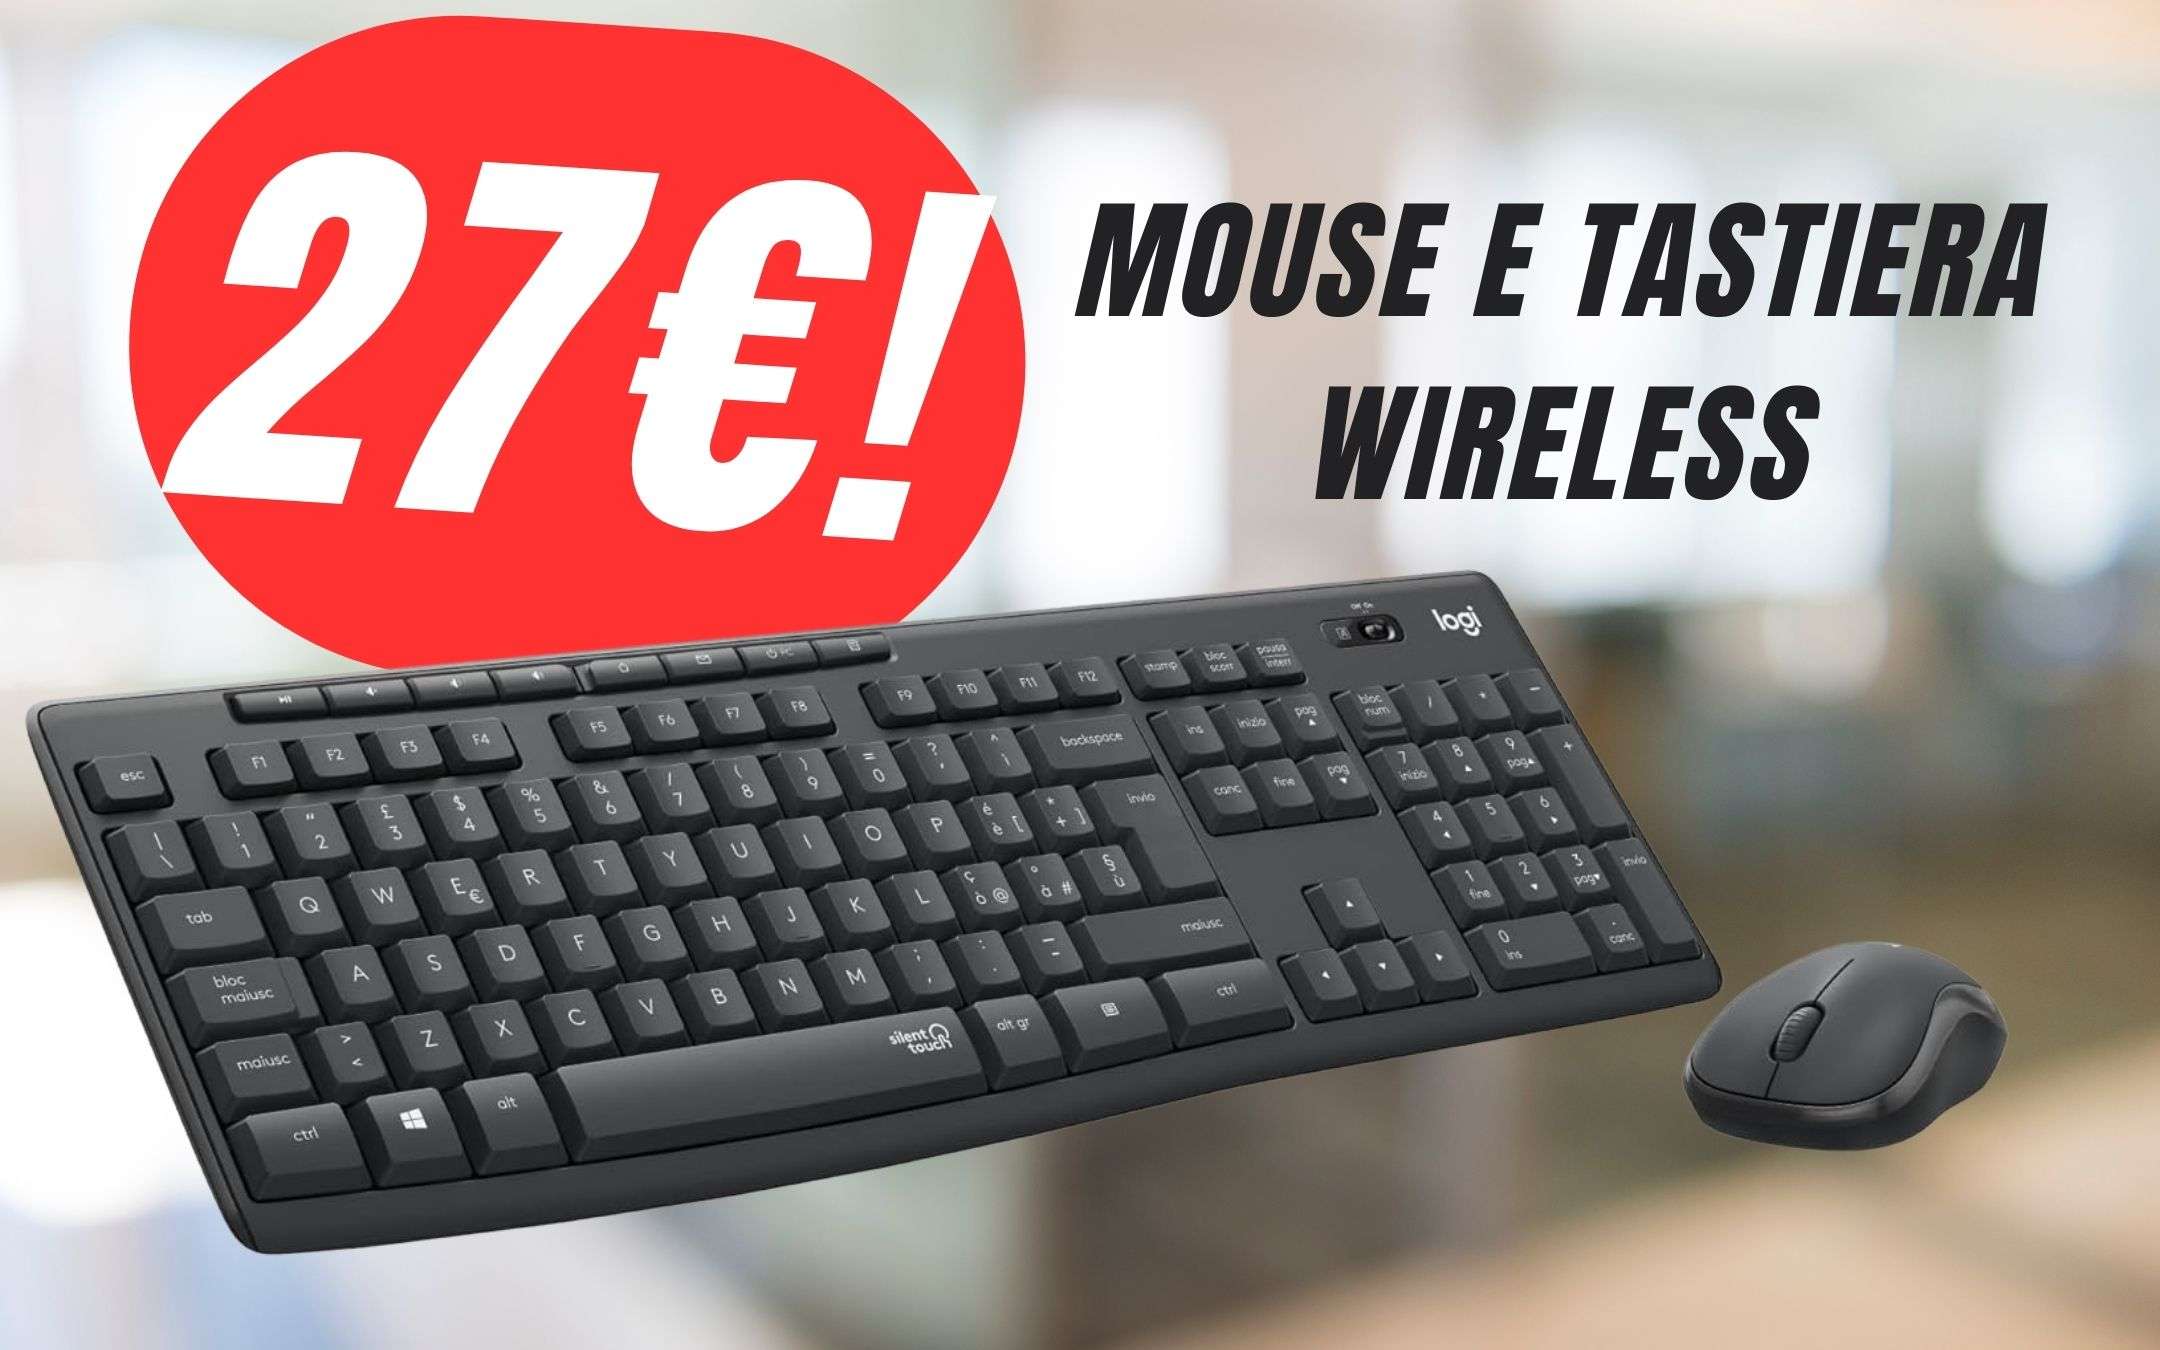 Combo Mouse e Tastiera senza fili a 27€? Sì, grazie allo SCONTO !